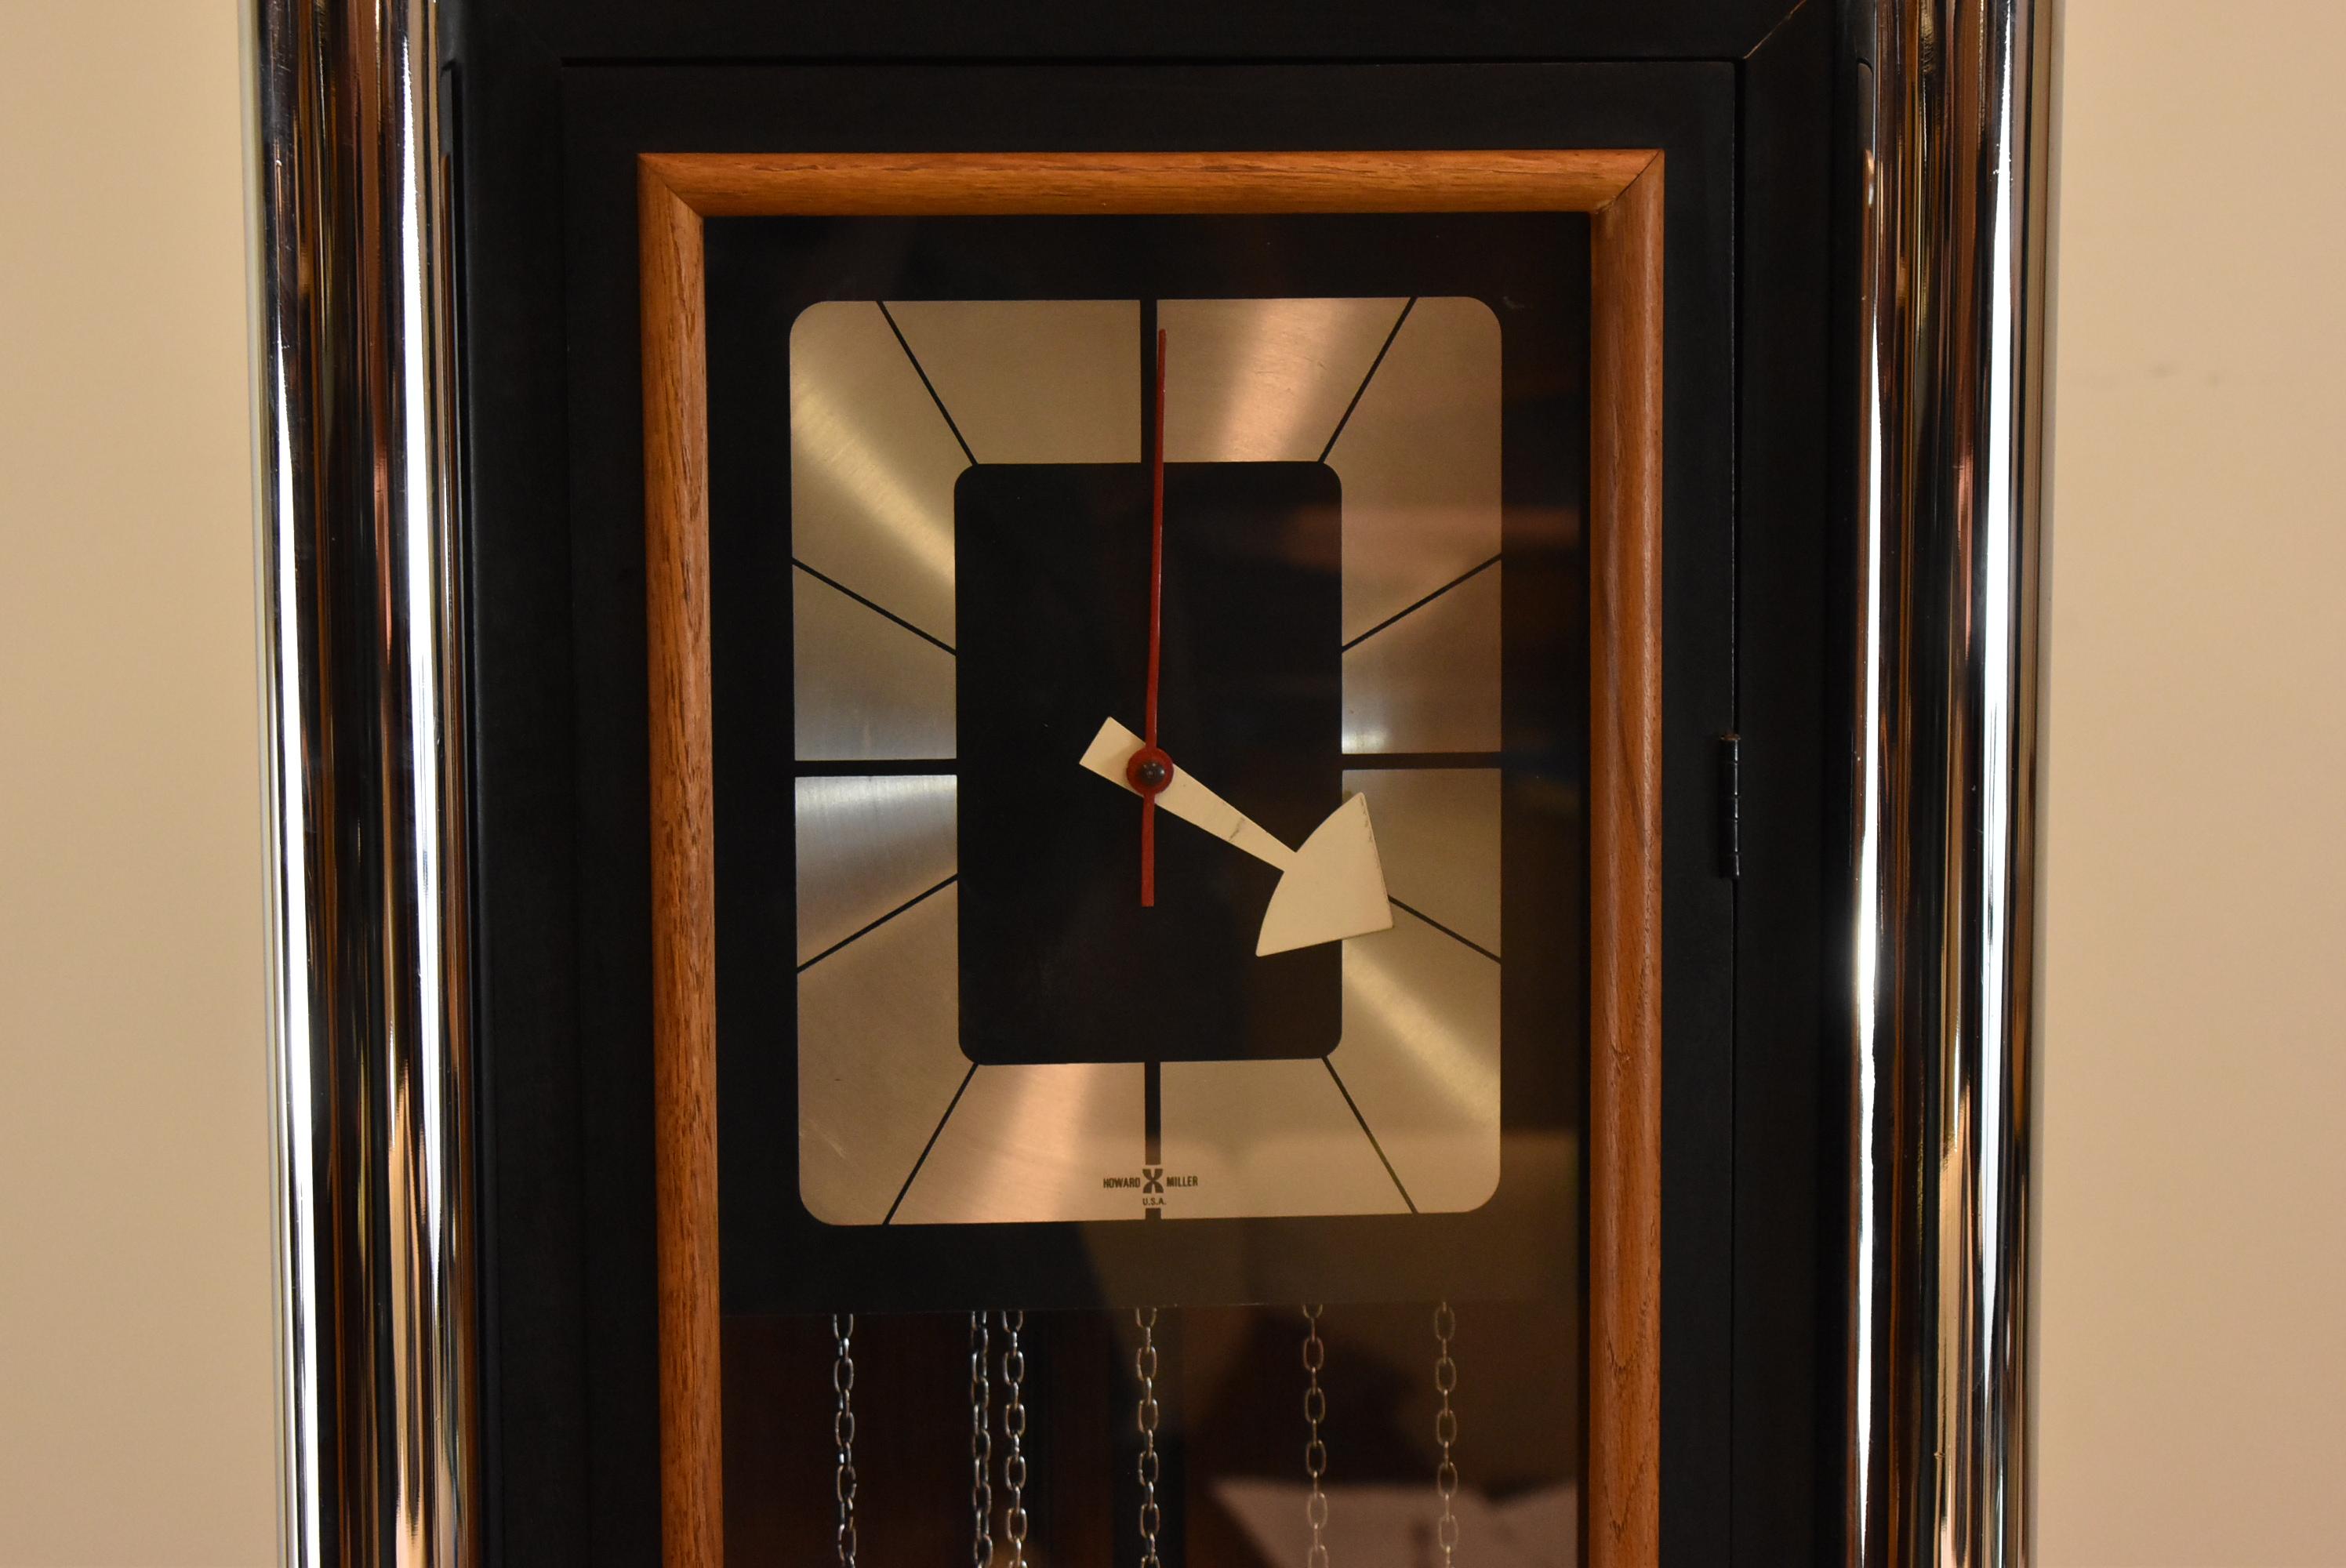 Horloge sur pied Howard Miller moderne du milieu du siècle. Laque noire avec garniture chromée demi-ronde. Façade en bois. Les carillons ont besoin d'être ajustés et ne sonnent pas correctement. Les poids ont quelques bosses. Dimensions : 10.5